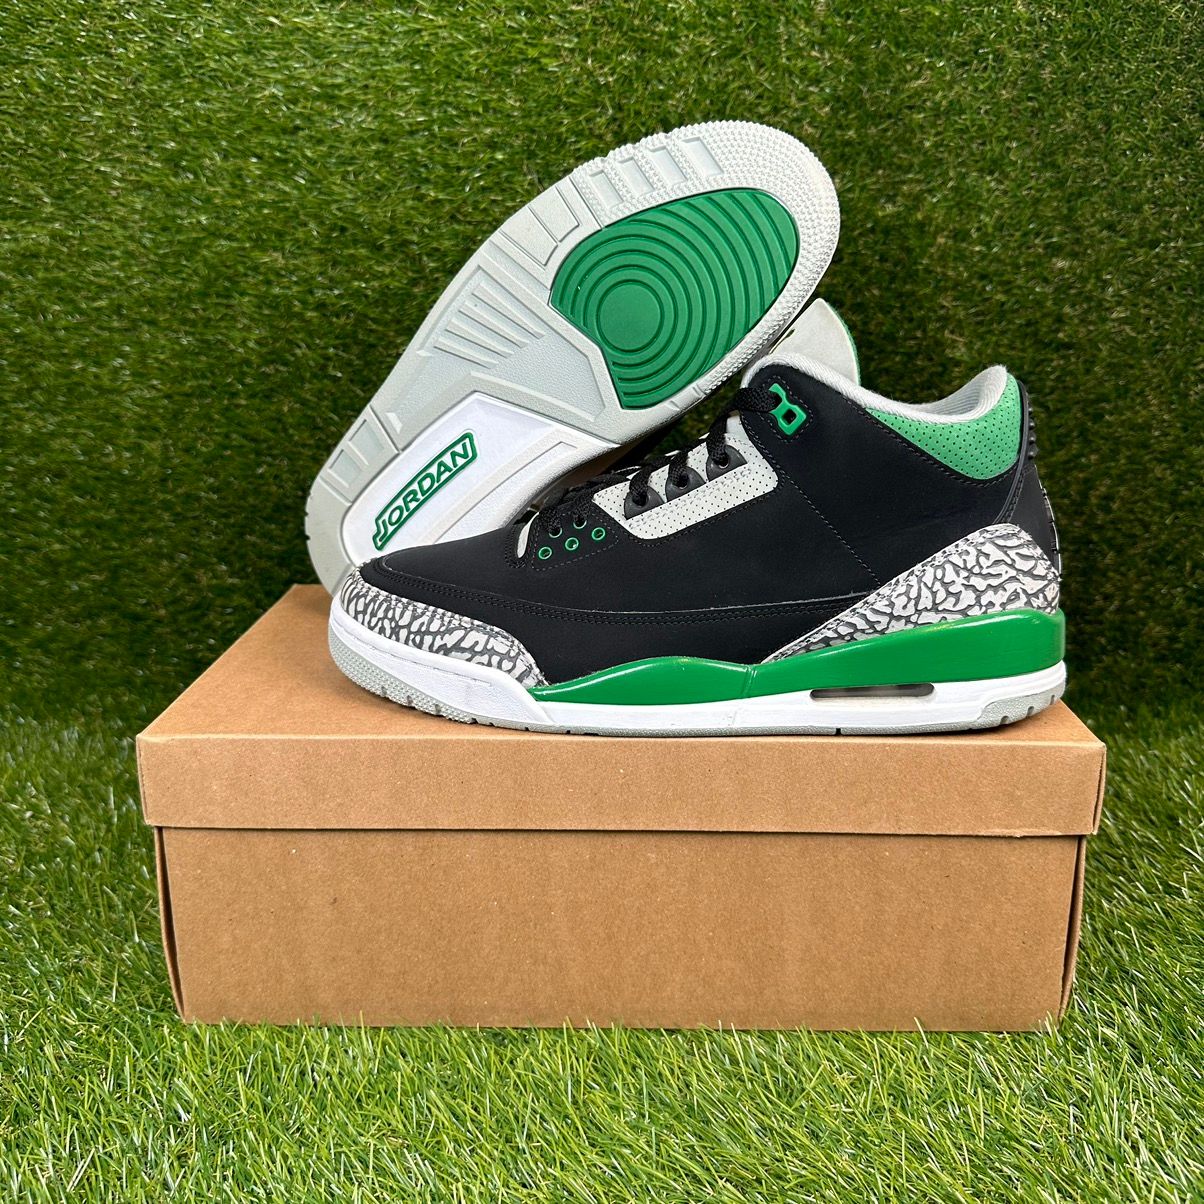 Pre-owned Jordan Nike Air Jordan 3 Pine Green Shoes In Green/black